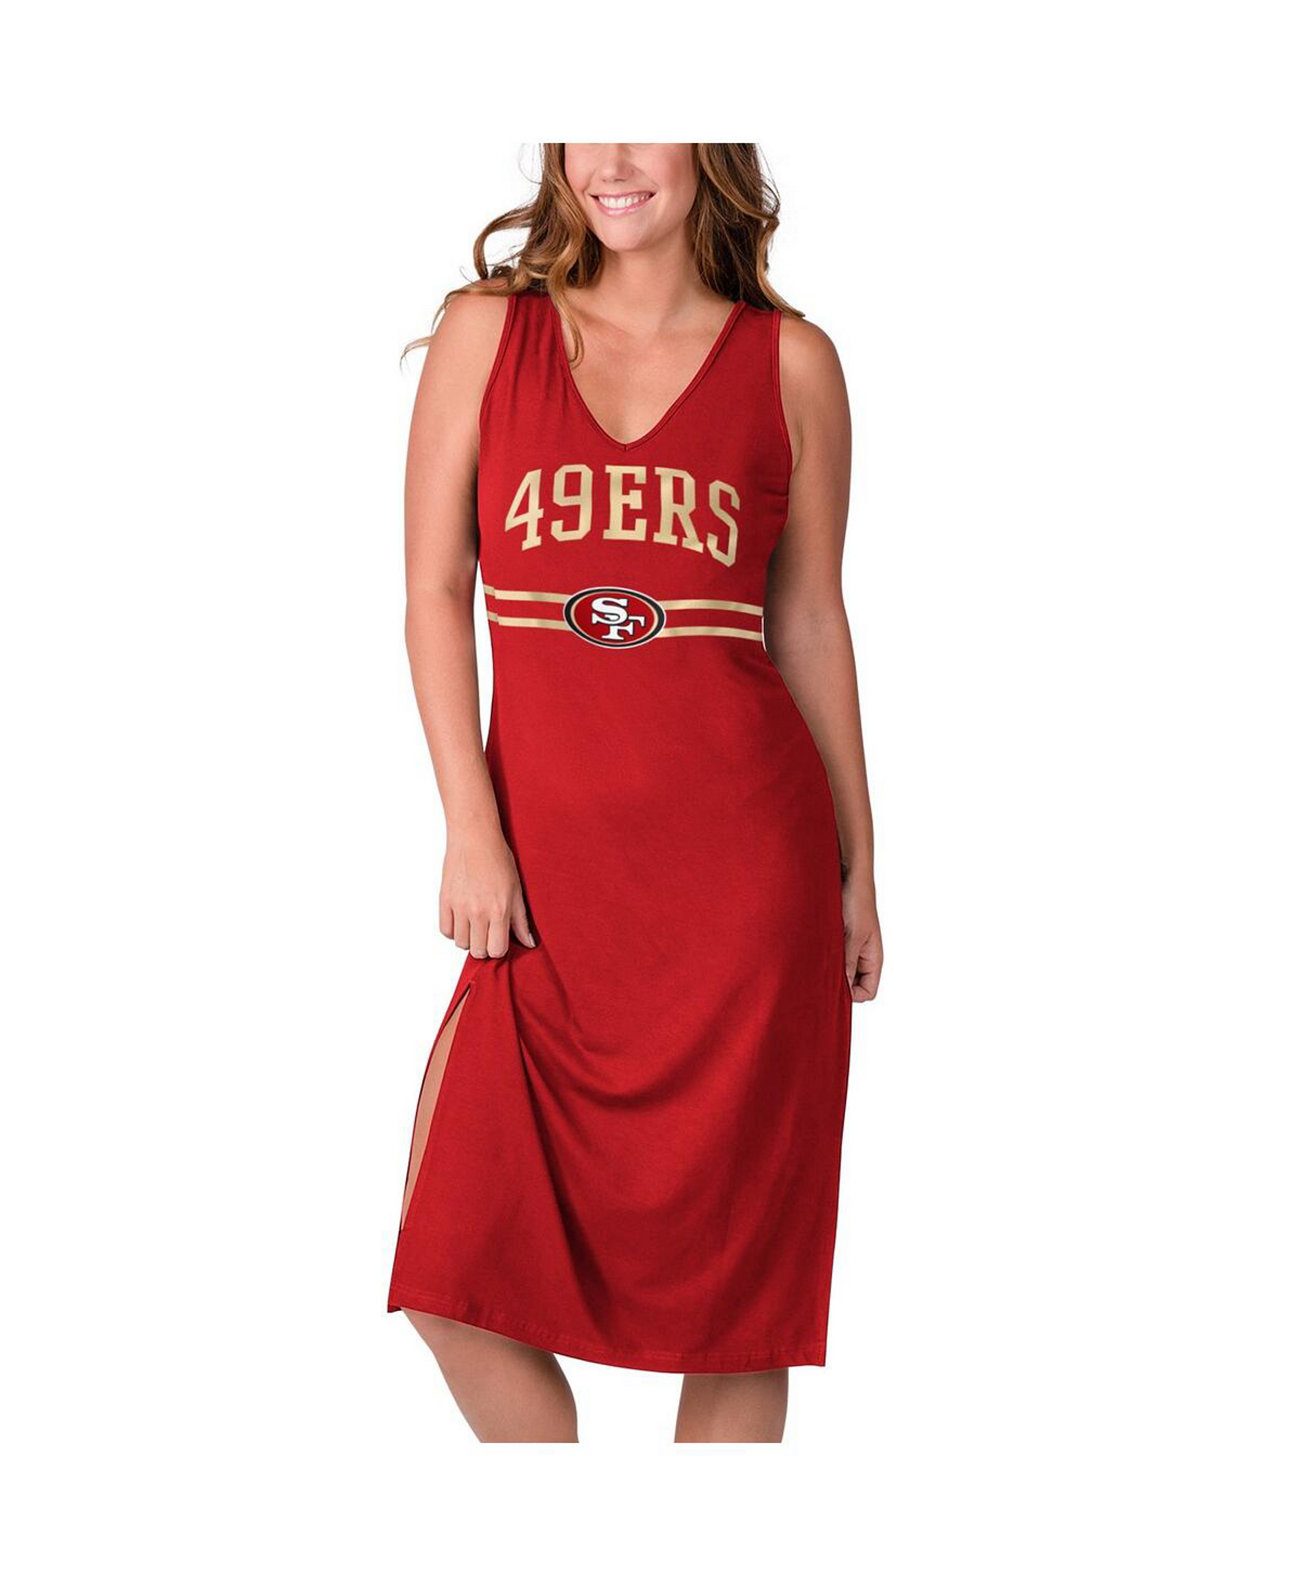 Женское тренировочное платье макси с v-образным вырезом Scarlet San Francisco 49ers G-III